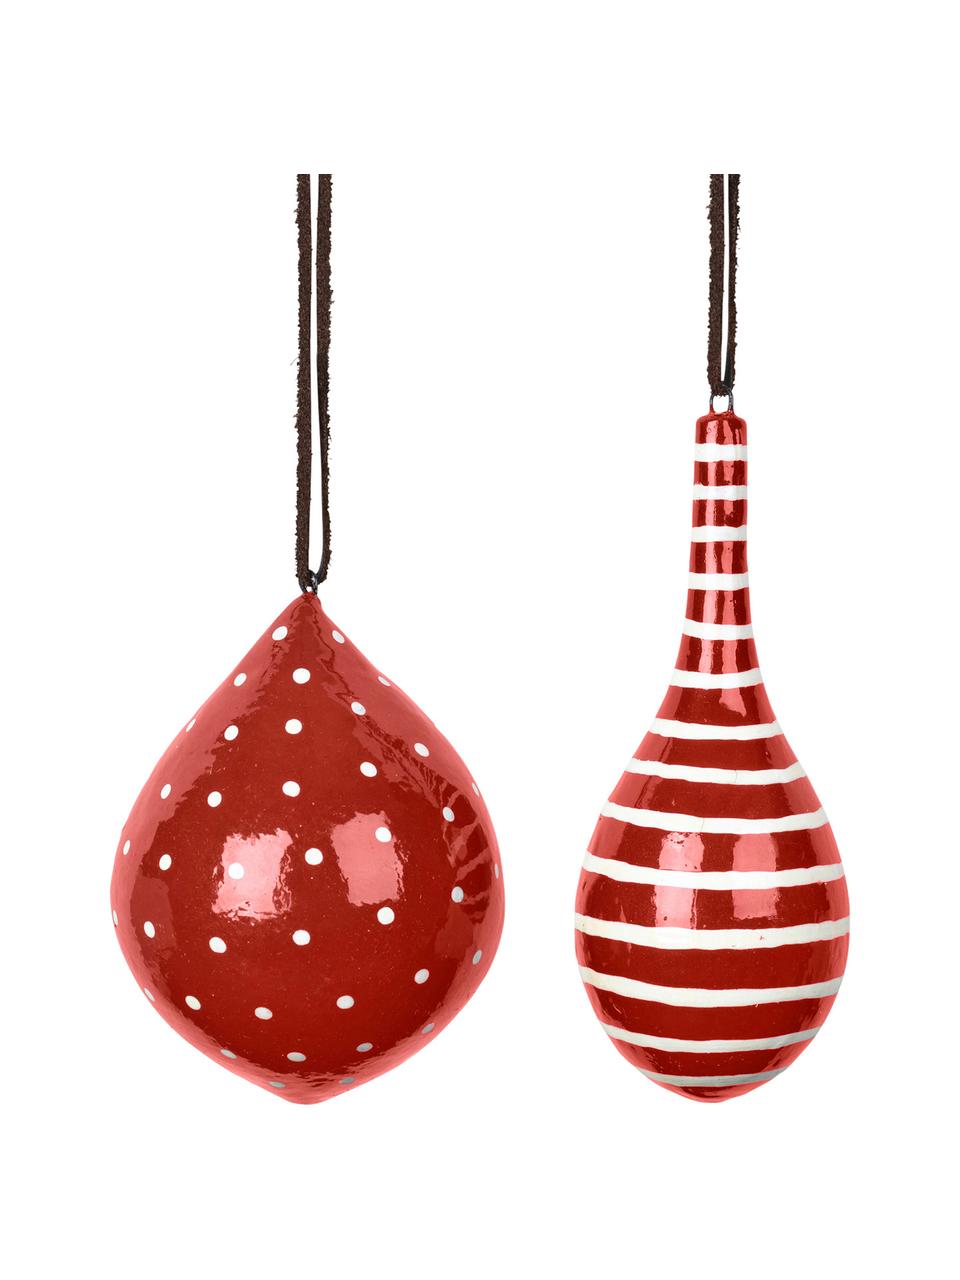 Weihnachtskugel-Set Dyo, 2-tlg., Pappe, laminiert, Rot, Weiß, Ø 10 cm